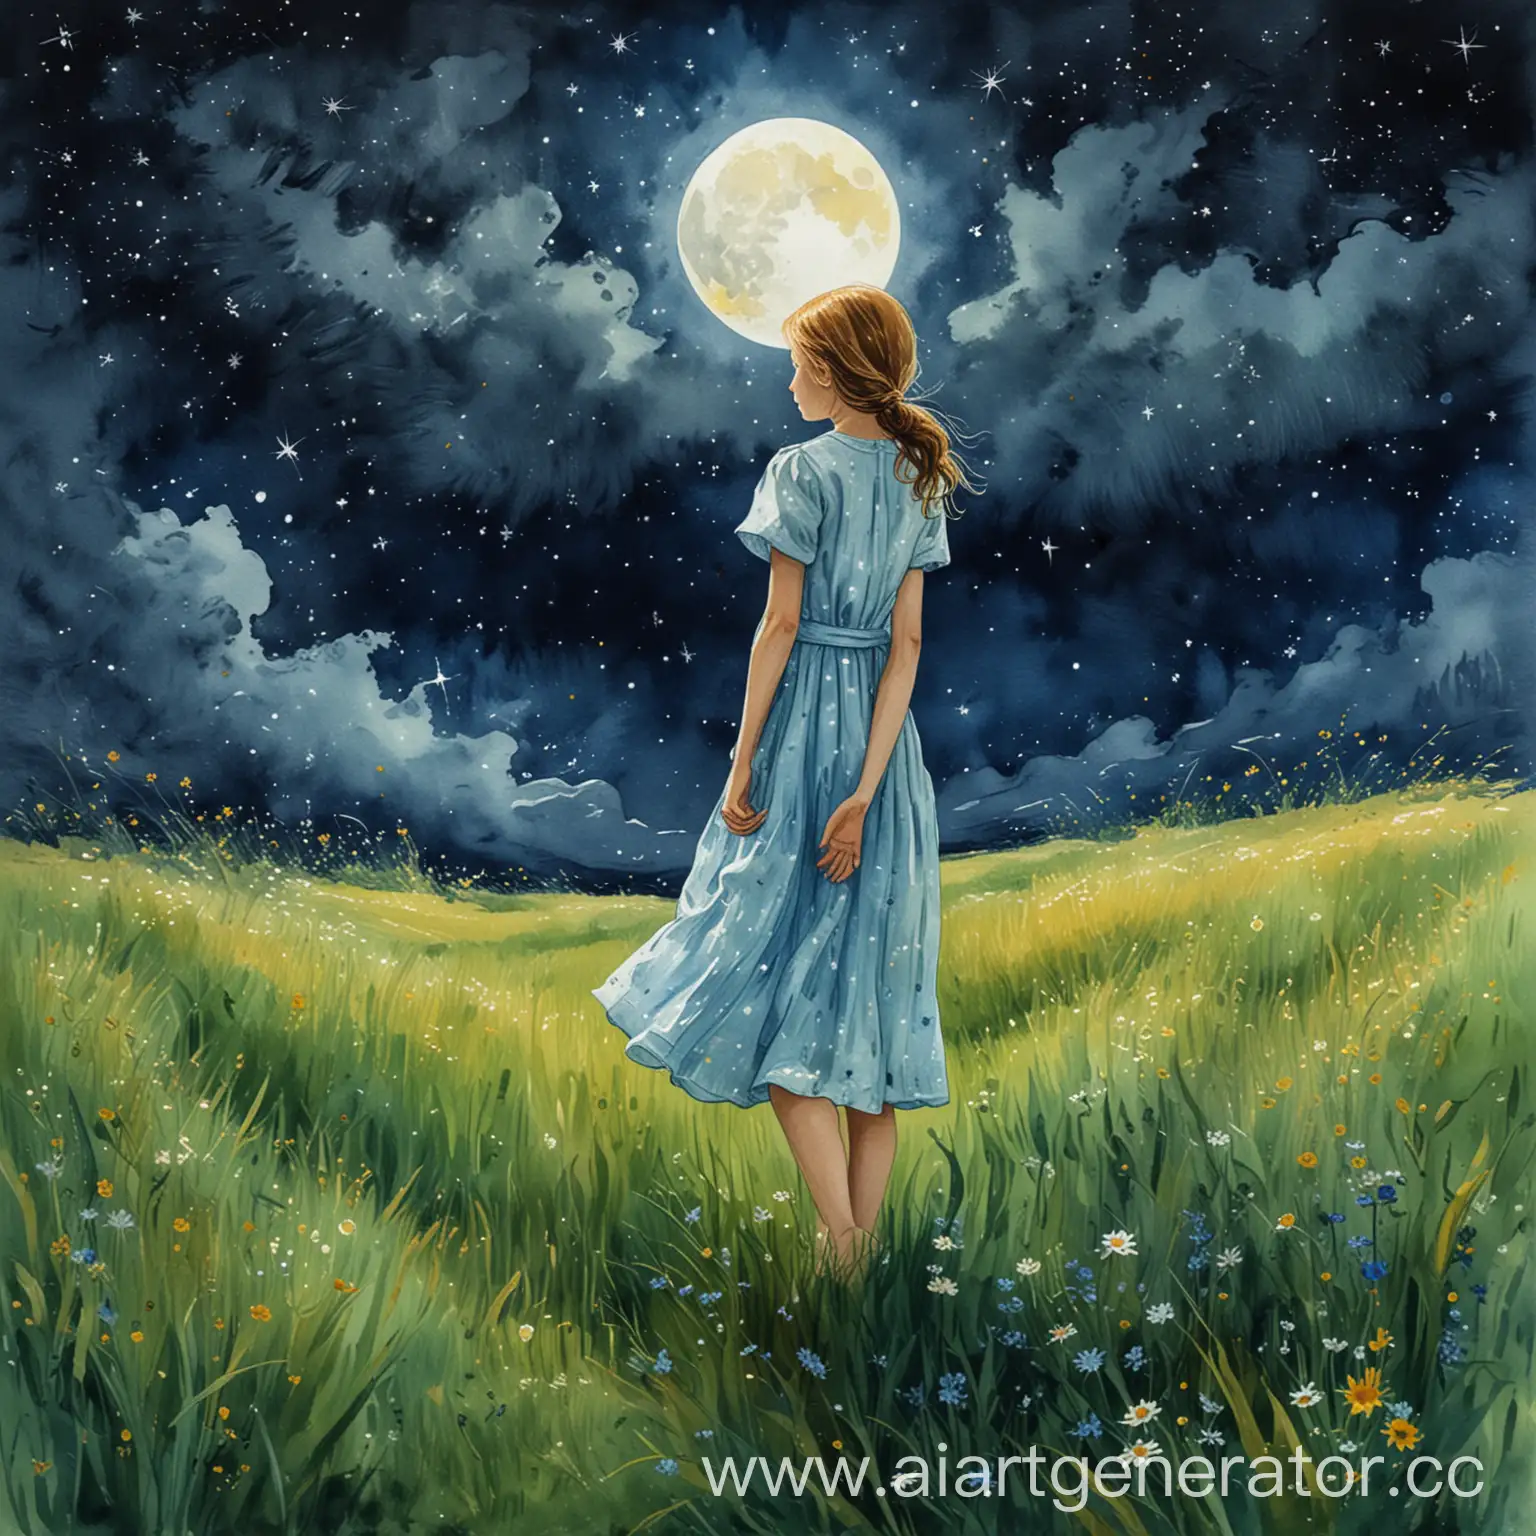 рисунок акварельными красками в в стиле художника Ван Гога. девочка в полный рост 12 лет в лёгком летнем платье стоит в траве и смотрит на ночное небо. в небе светит Луна и много звезд. 